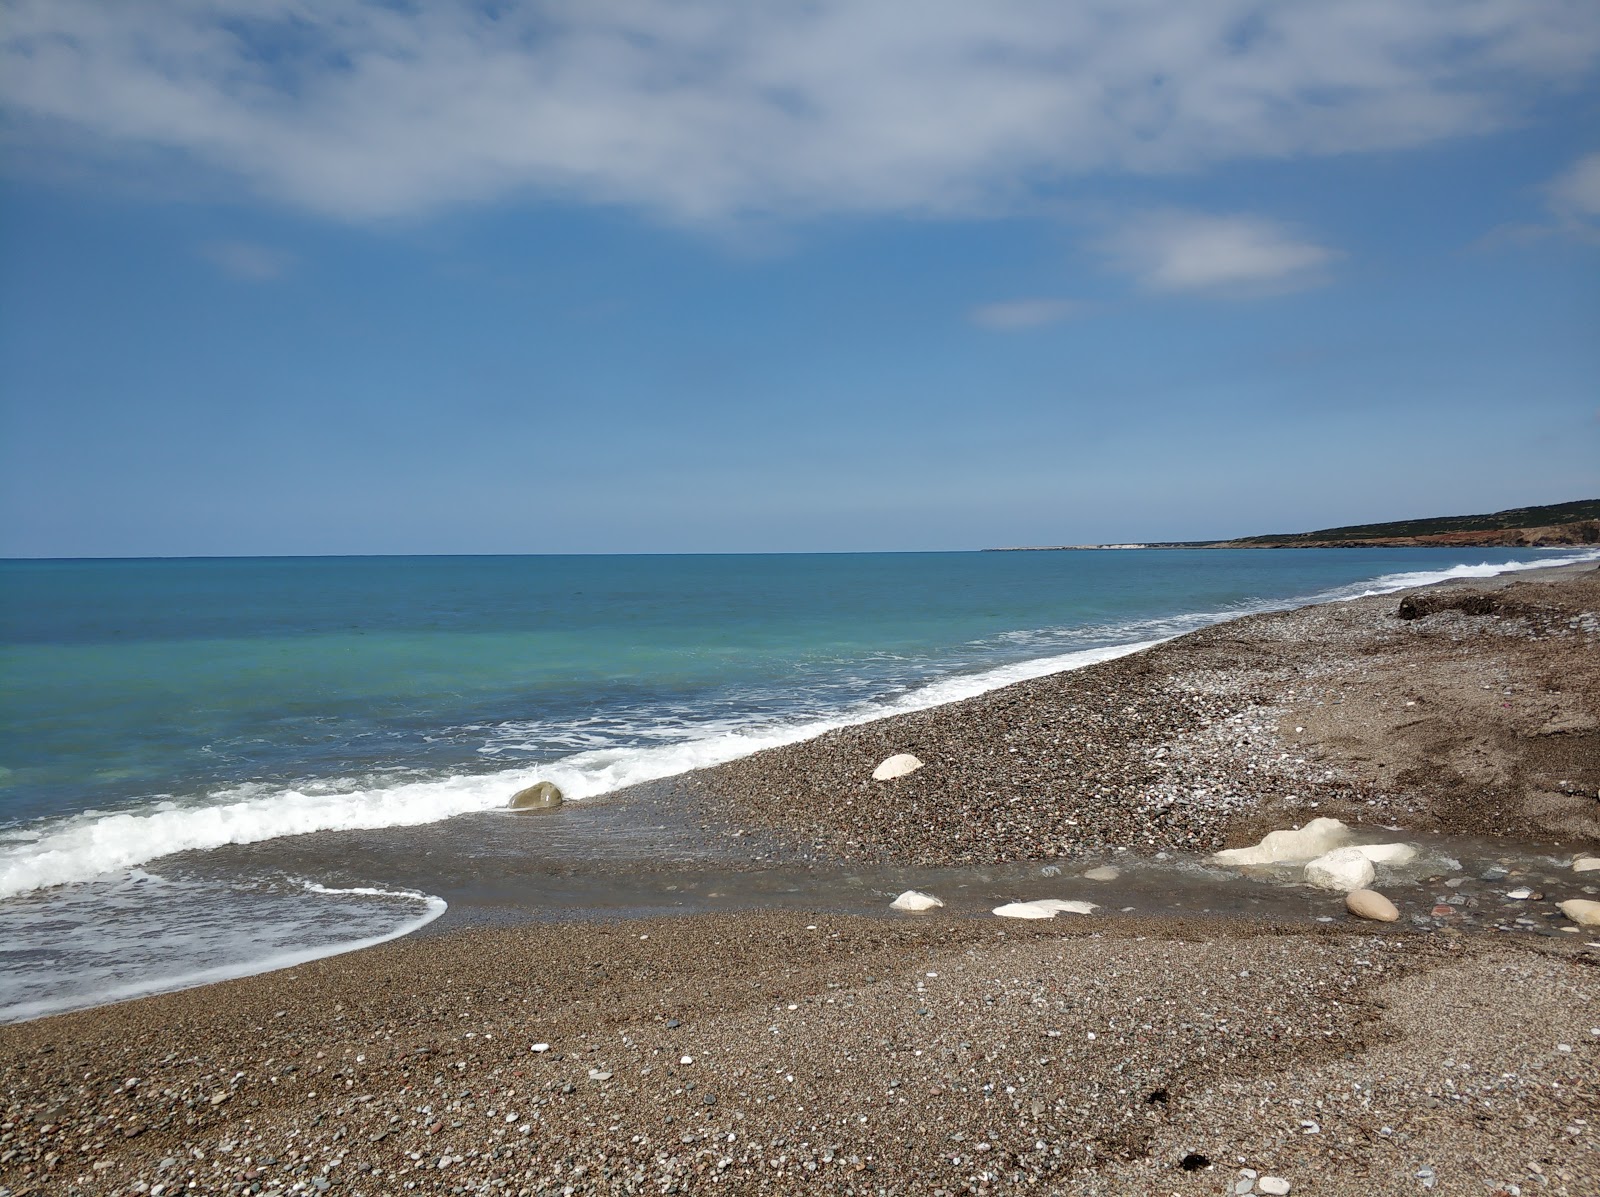 Fotografija Toxeftra beach II nahaja se v naravnem okolju